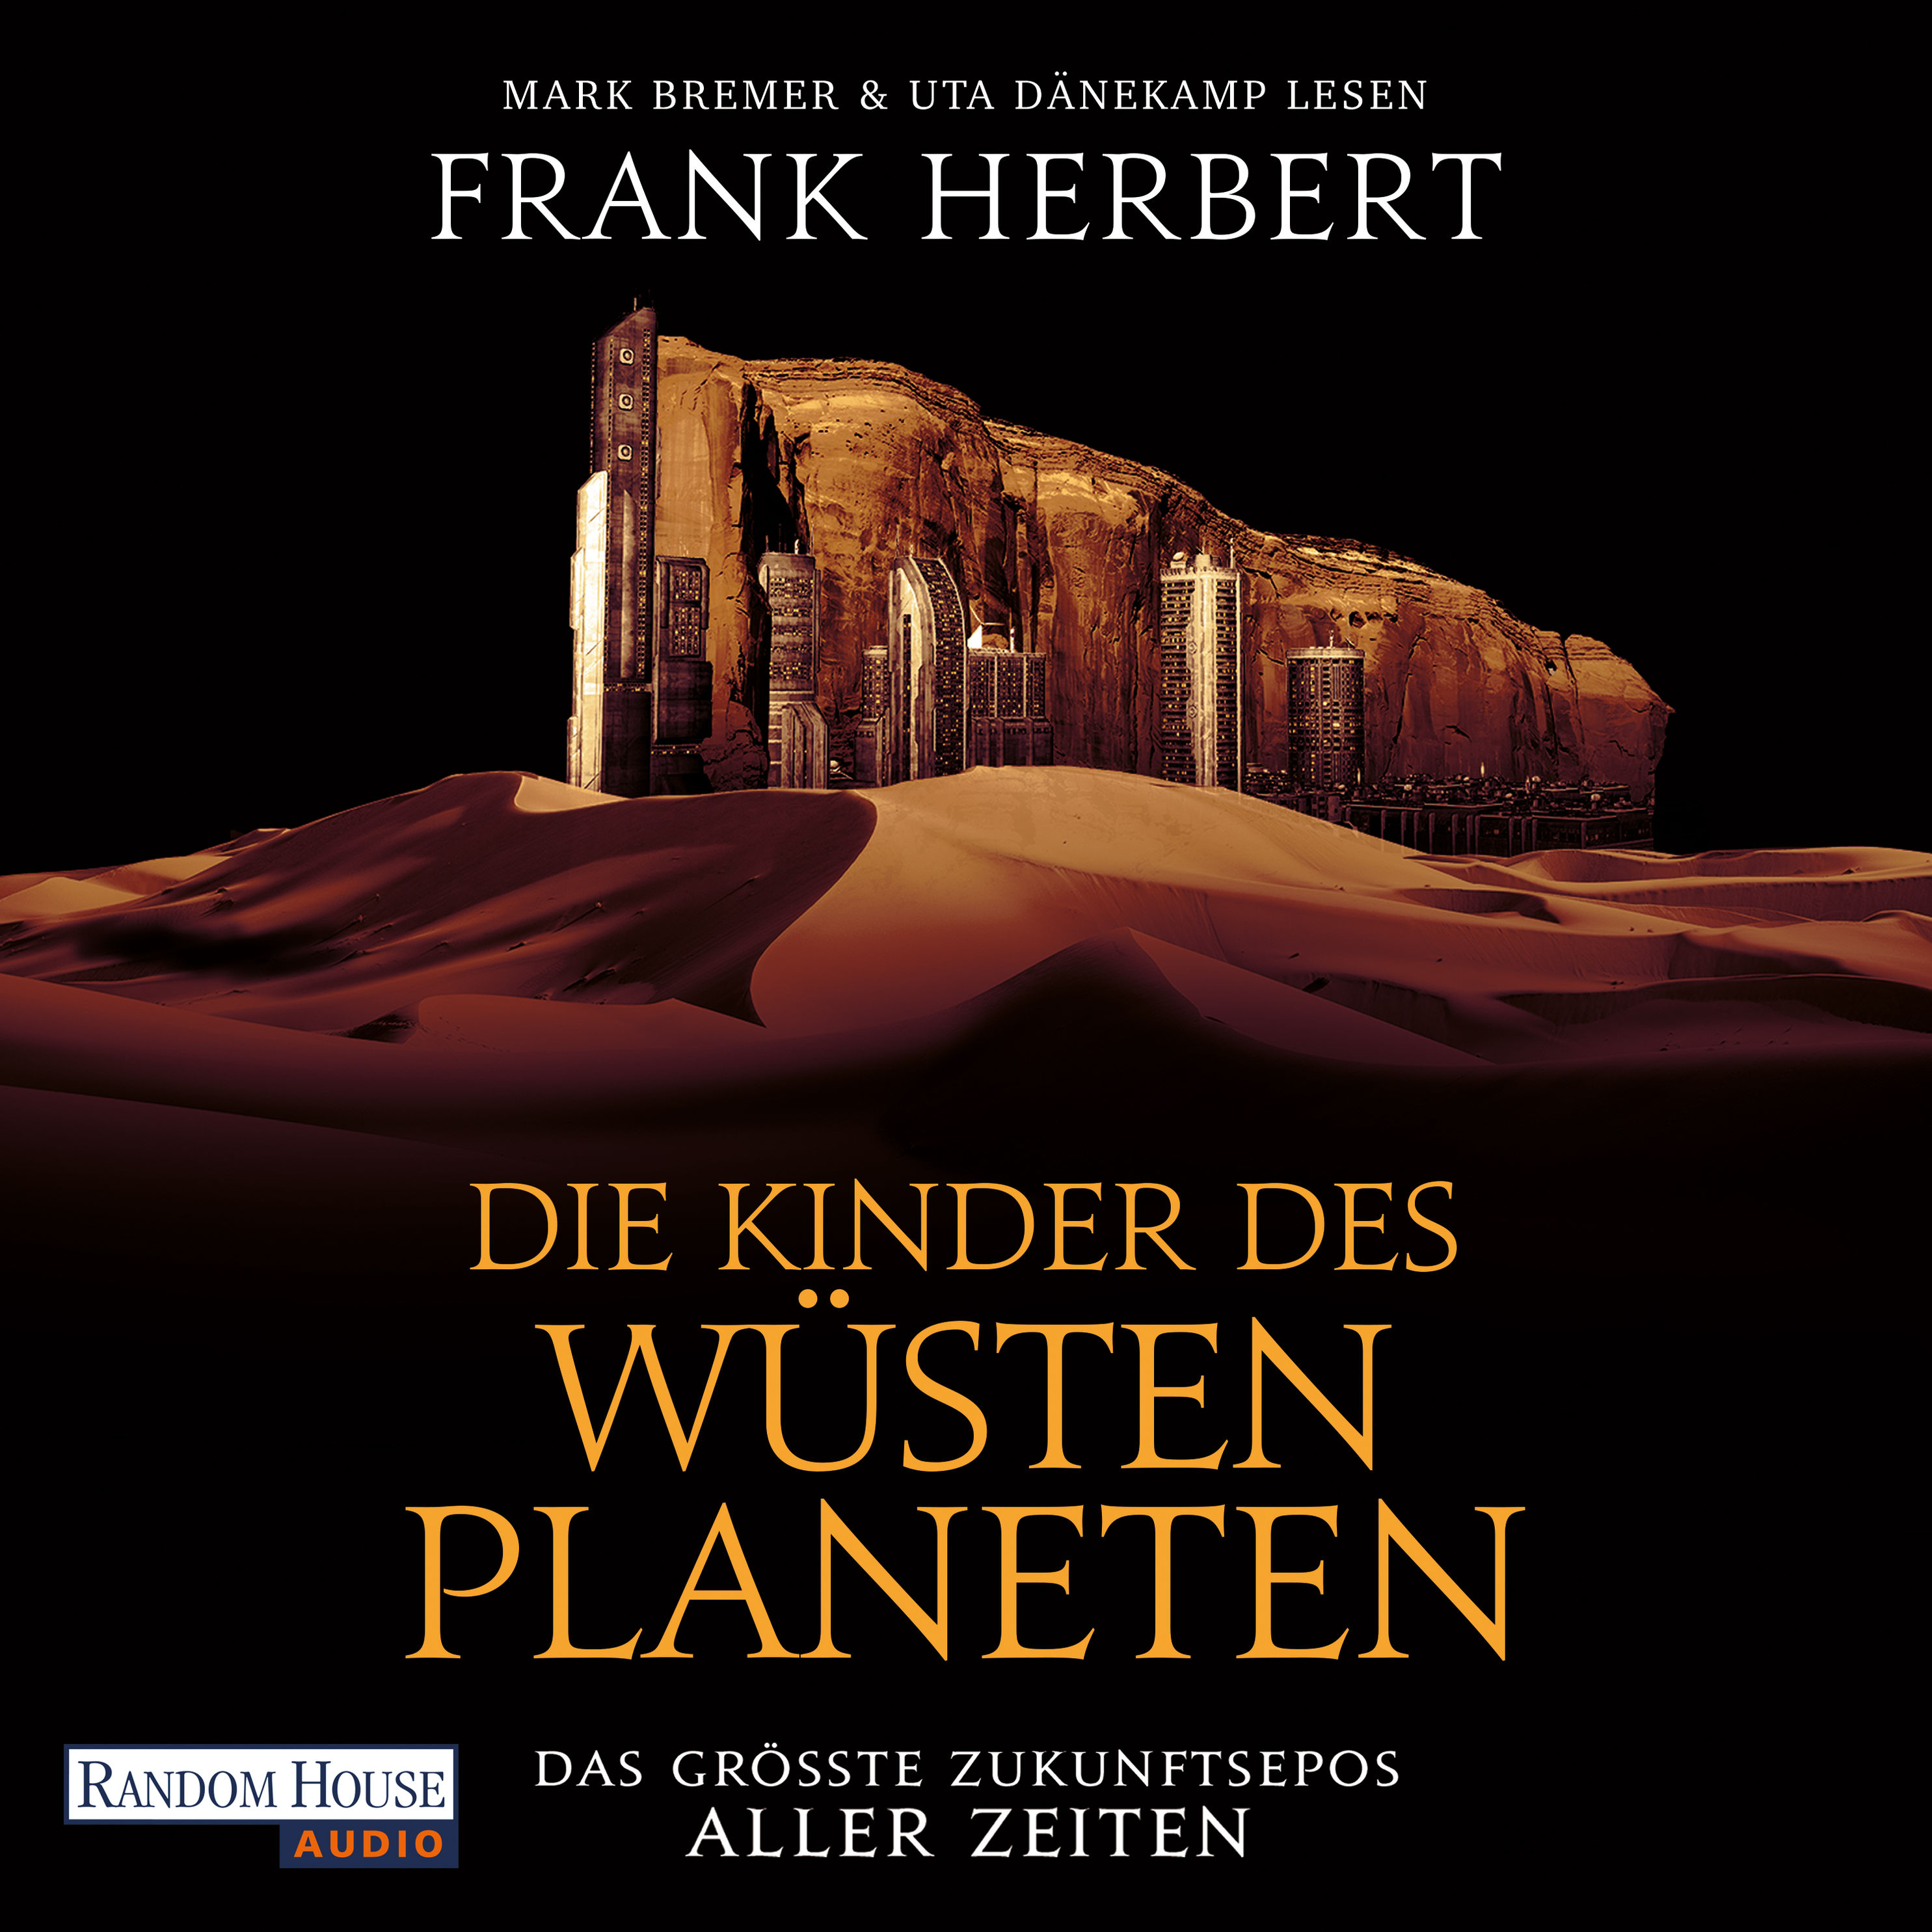 Der Wüstenplanet - neu übersetzt - 3 - Die Kinder des Wüstenplaneten Hörbuch  Download